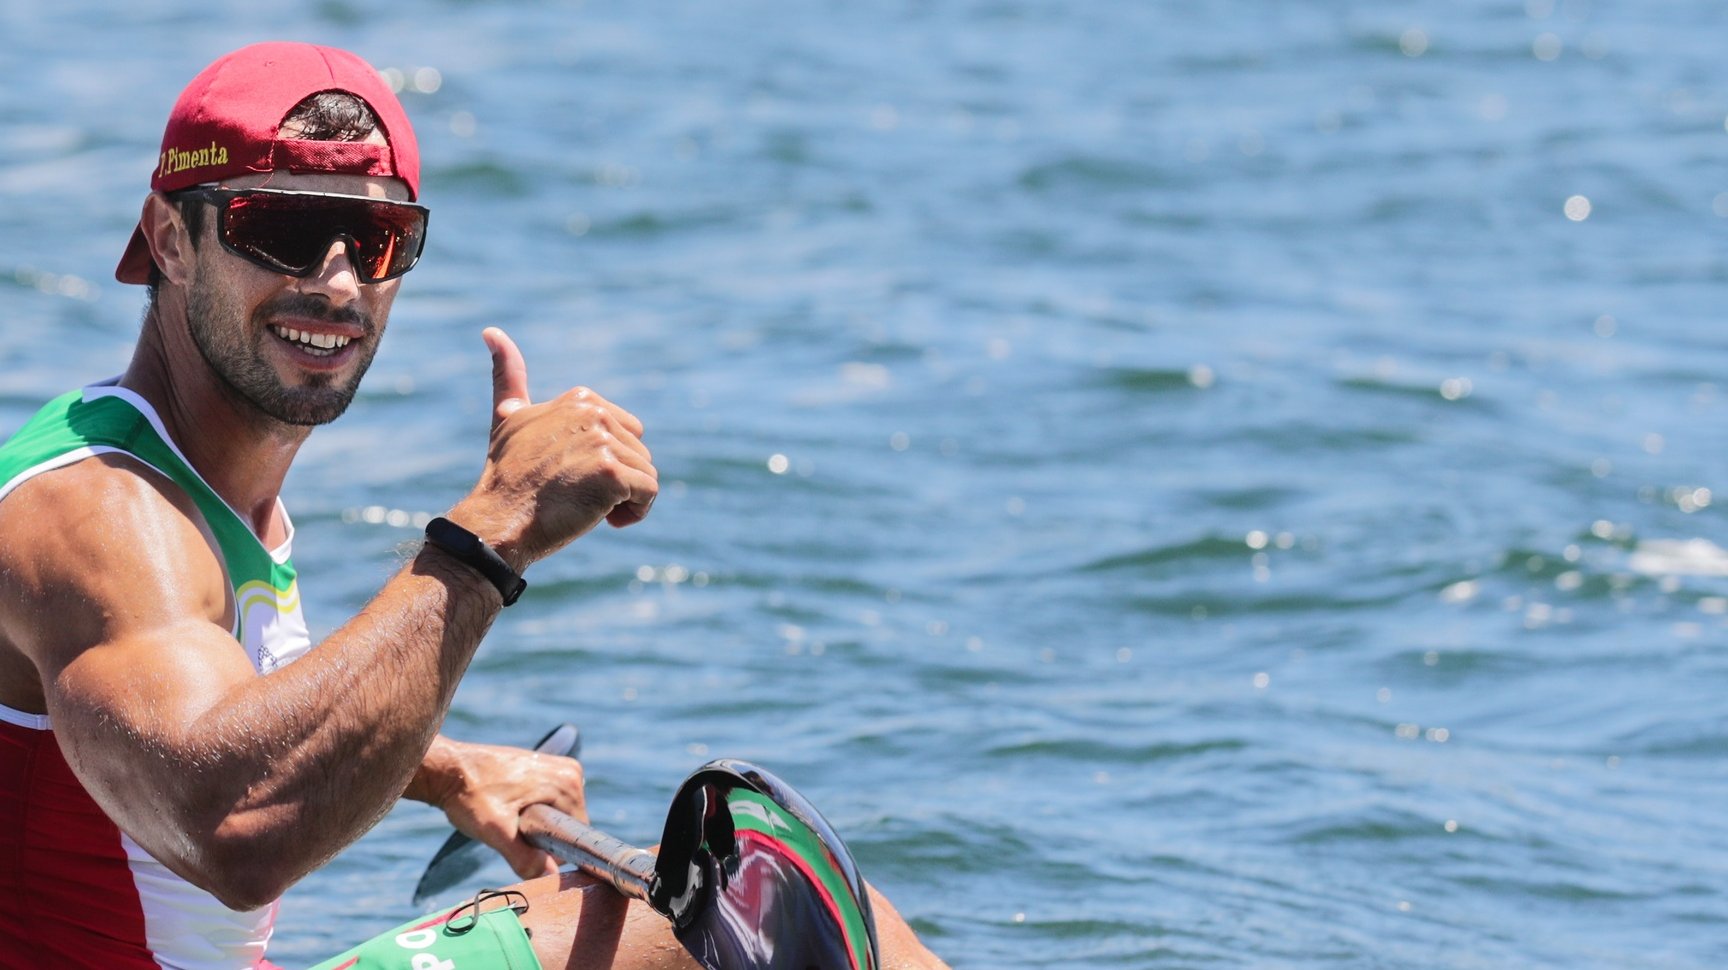 O canoista português Fernando Pimenta comemora a medalha de bronze a´pos acabar na final de Caiaque K1 1000 metros dos Jogos Olimpicos de Tóquio2020 em terceiro lugar, no Sea Forest Waterways de Tóquio, 03 de agosto de 2021. TIAGO PETINGA/LUSA